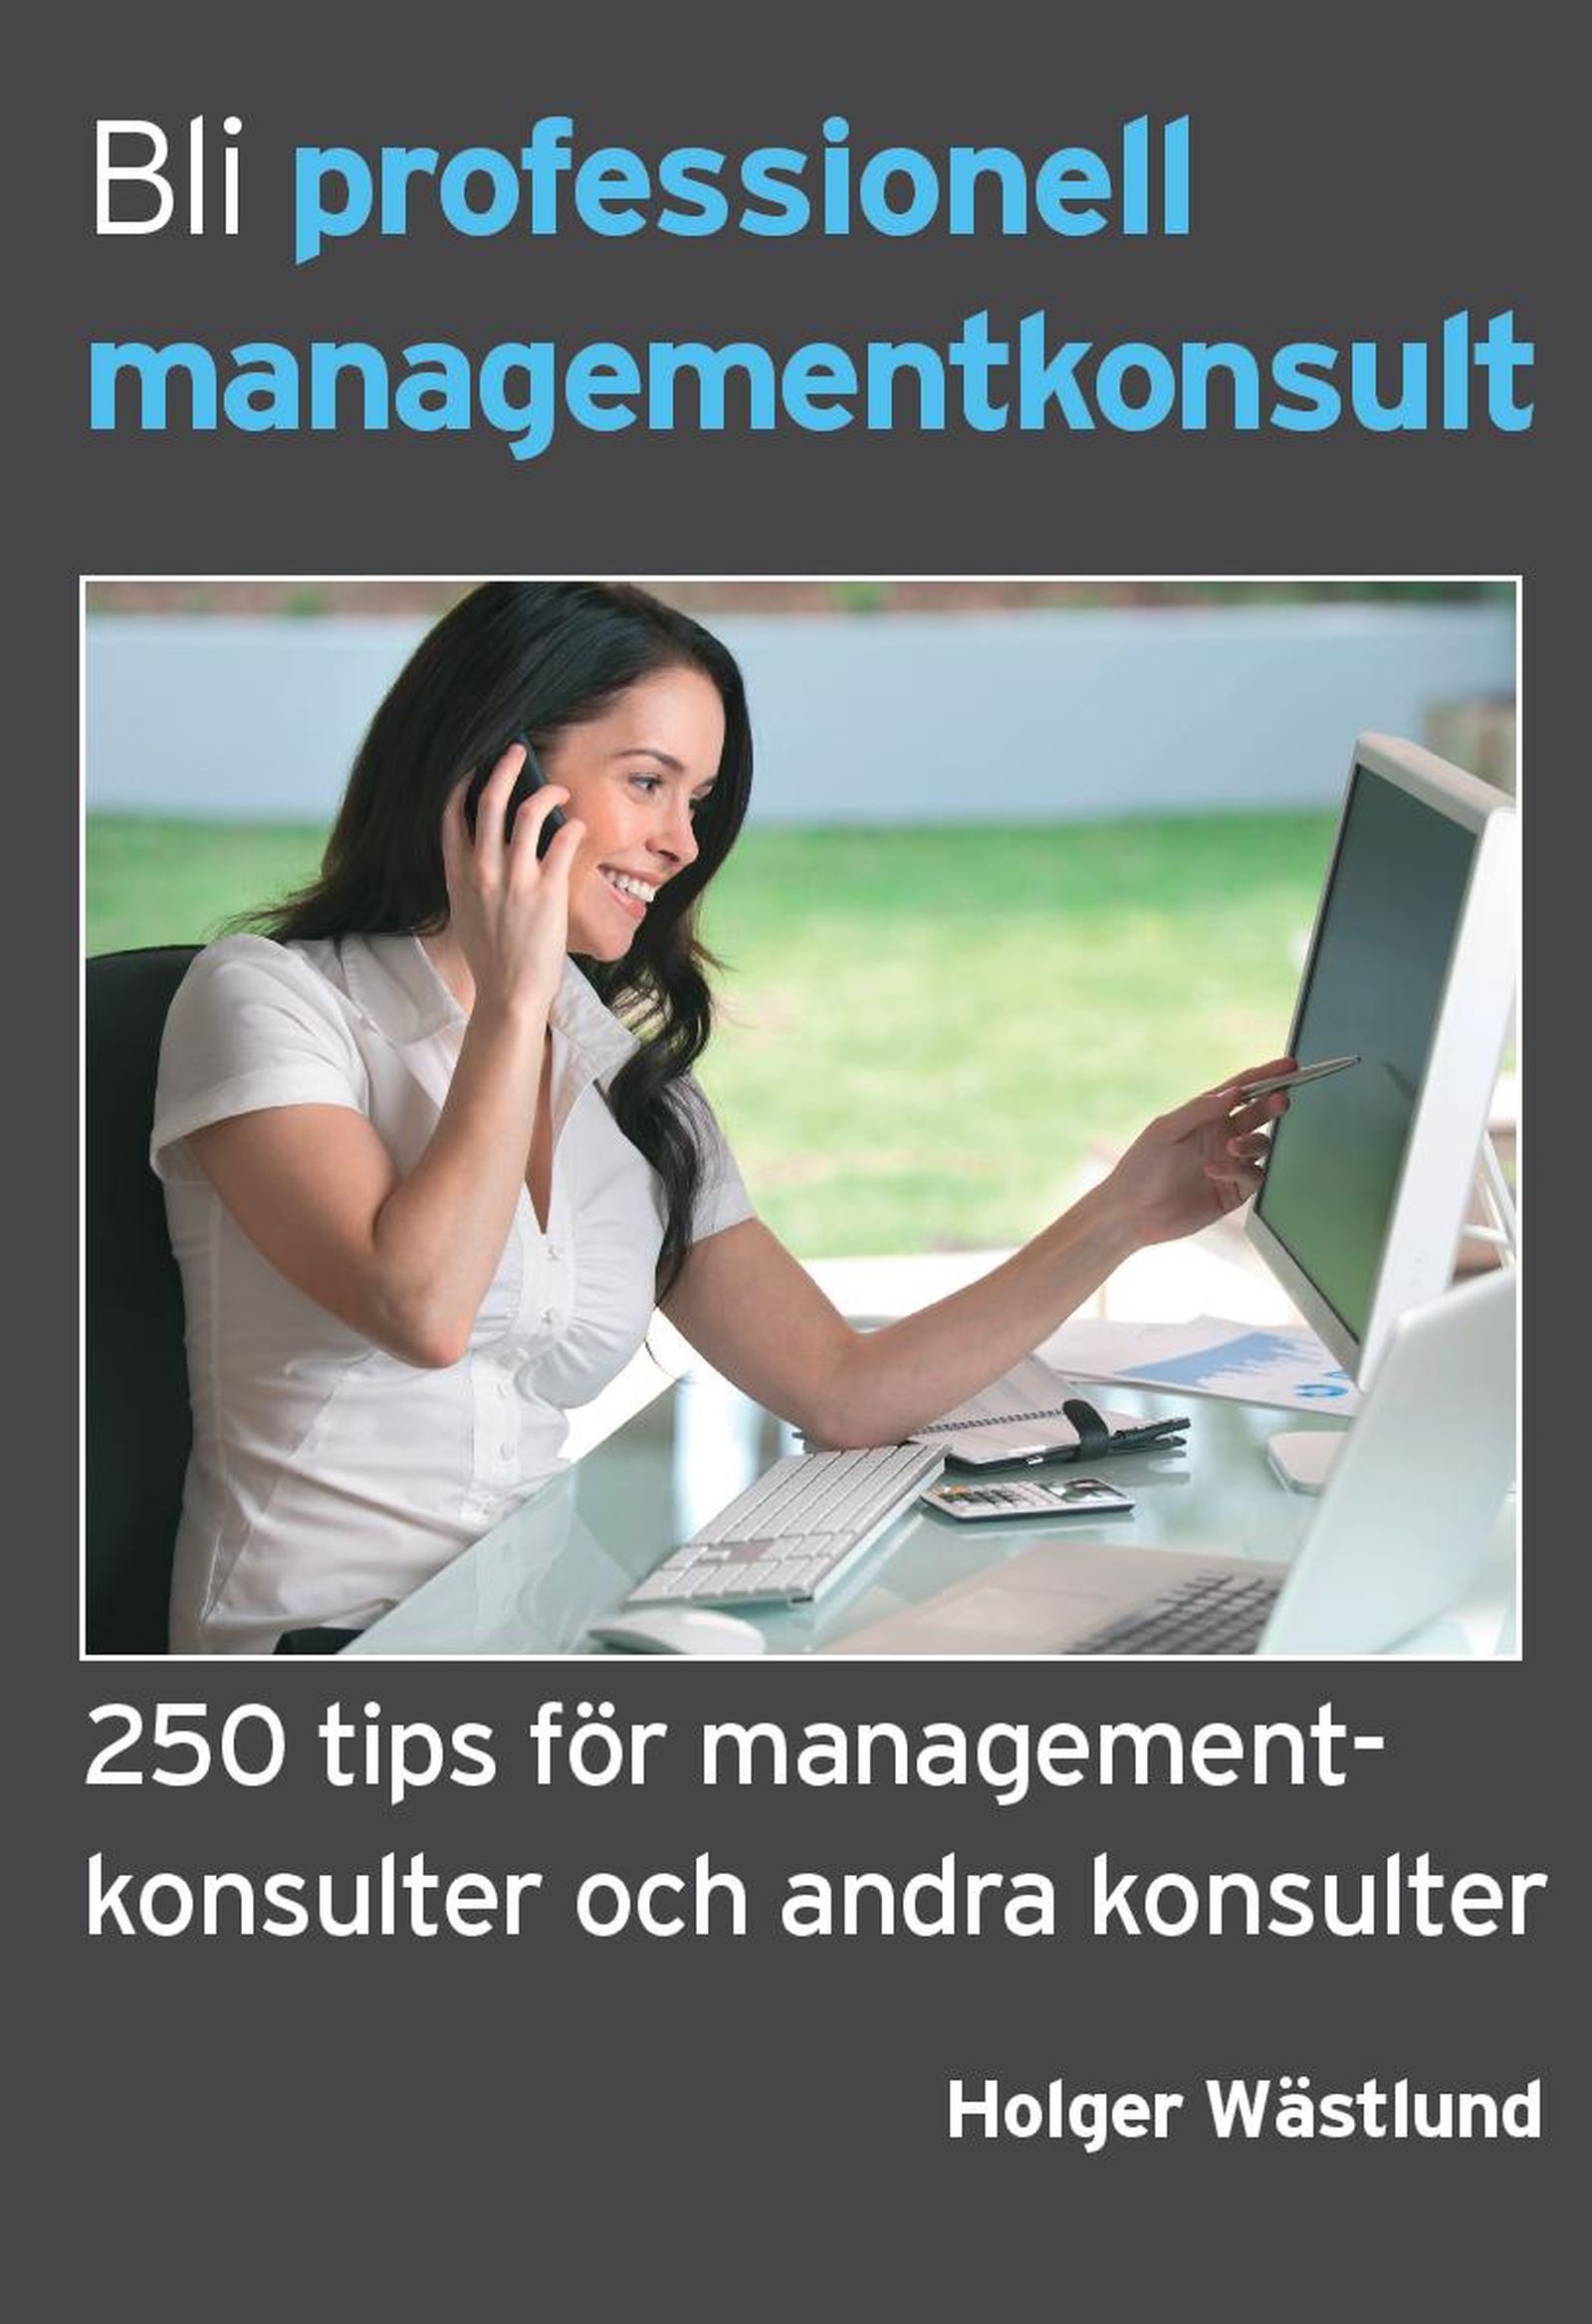 Bli professionell managementkonsult - 250 tips för managementkonsulter och andra konsulter, e-bog af Holger Wästlund